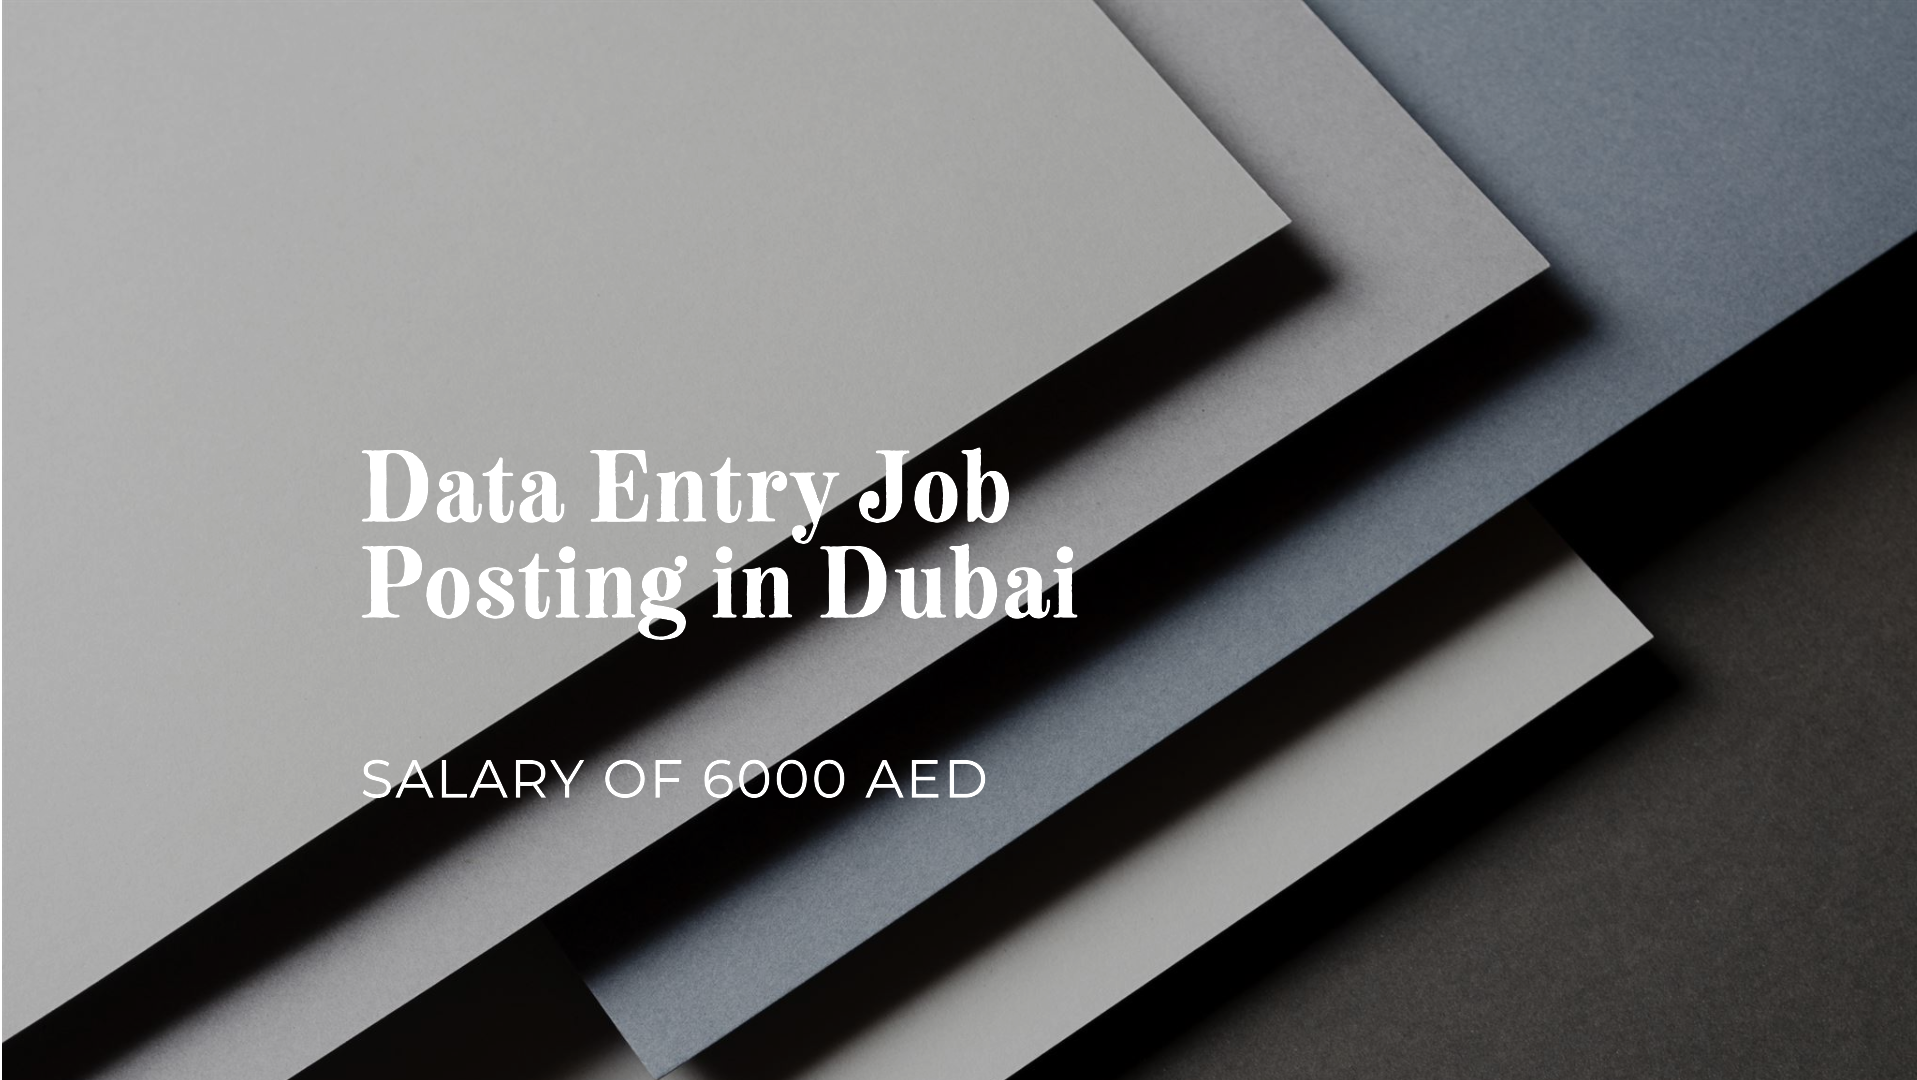 Data Entry jobs in Dubai | Salary 6000 AED